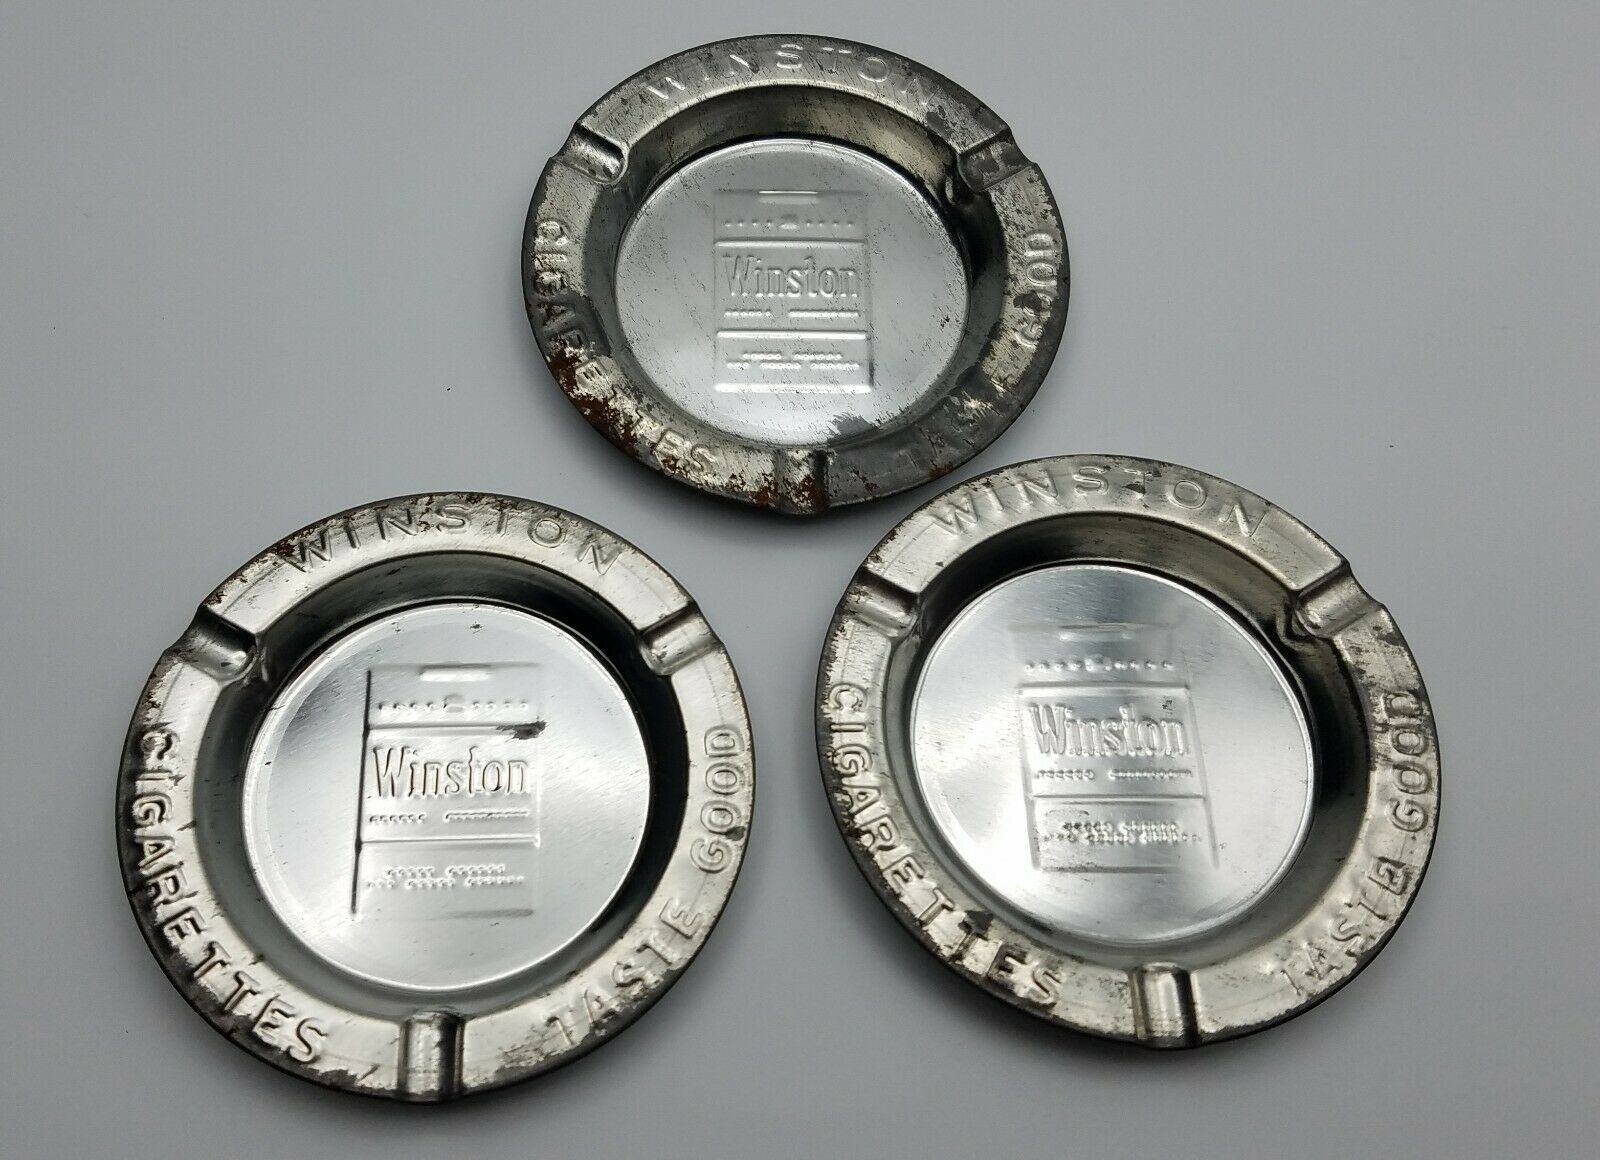 WINSTON CIGARETTES TASTE GOOD Vintage Tin Metal Ashtrays 3.5" SET OF 3 Free Ship - $13.42